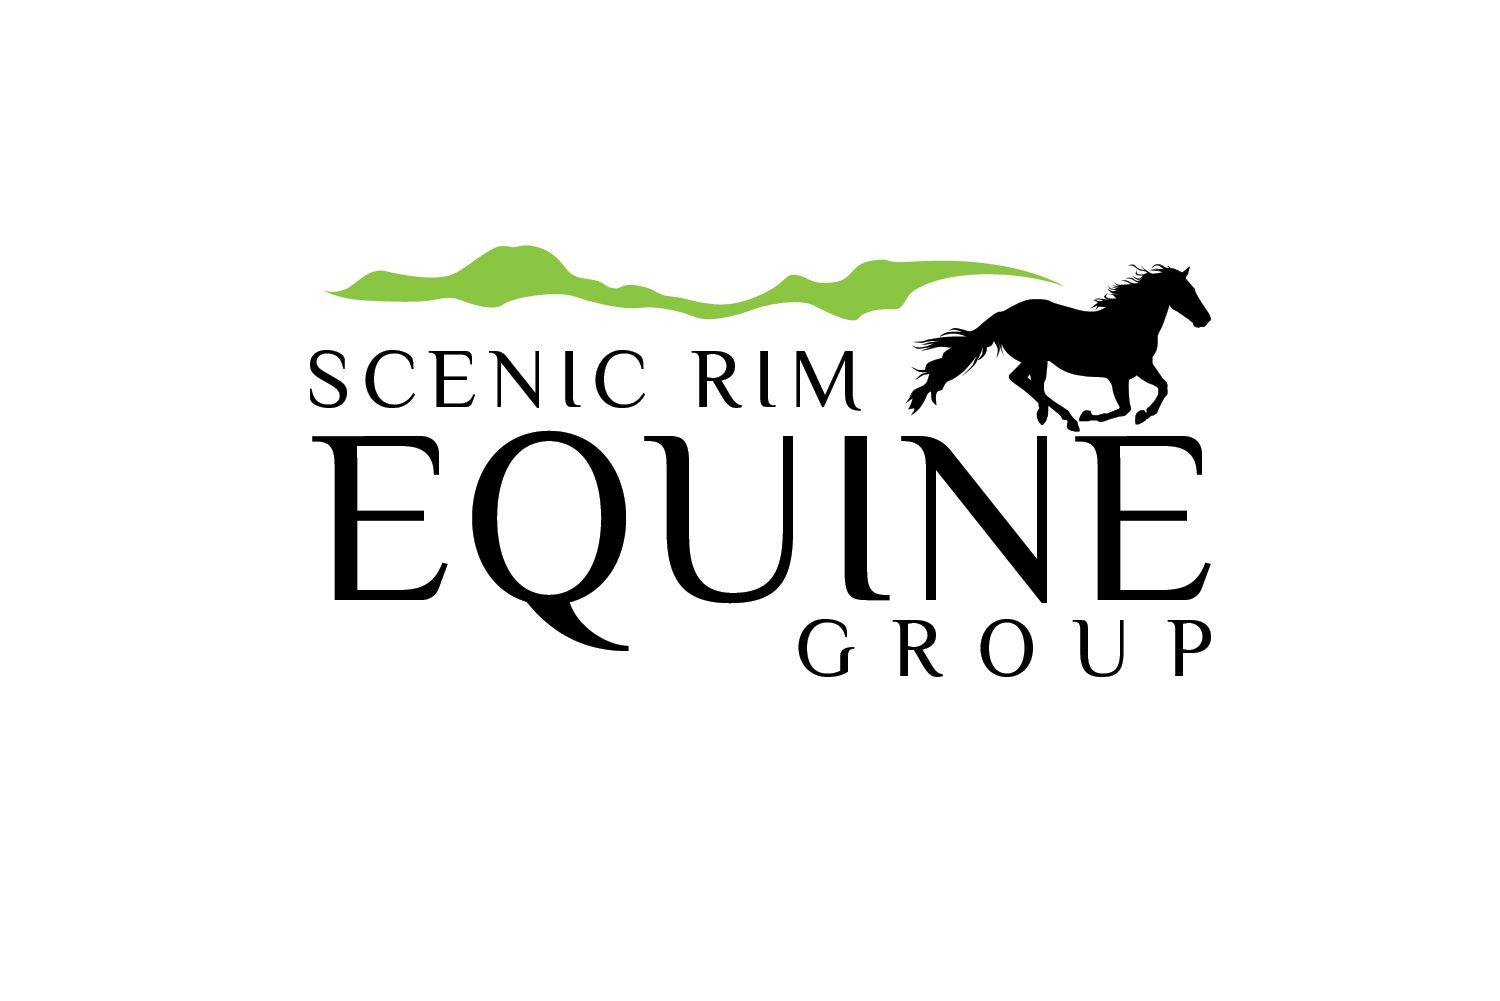 Horse Business Logo - Modern, Upmarket, Business Logo Design for Scenic Rim Equine Group